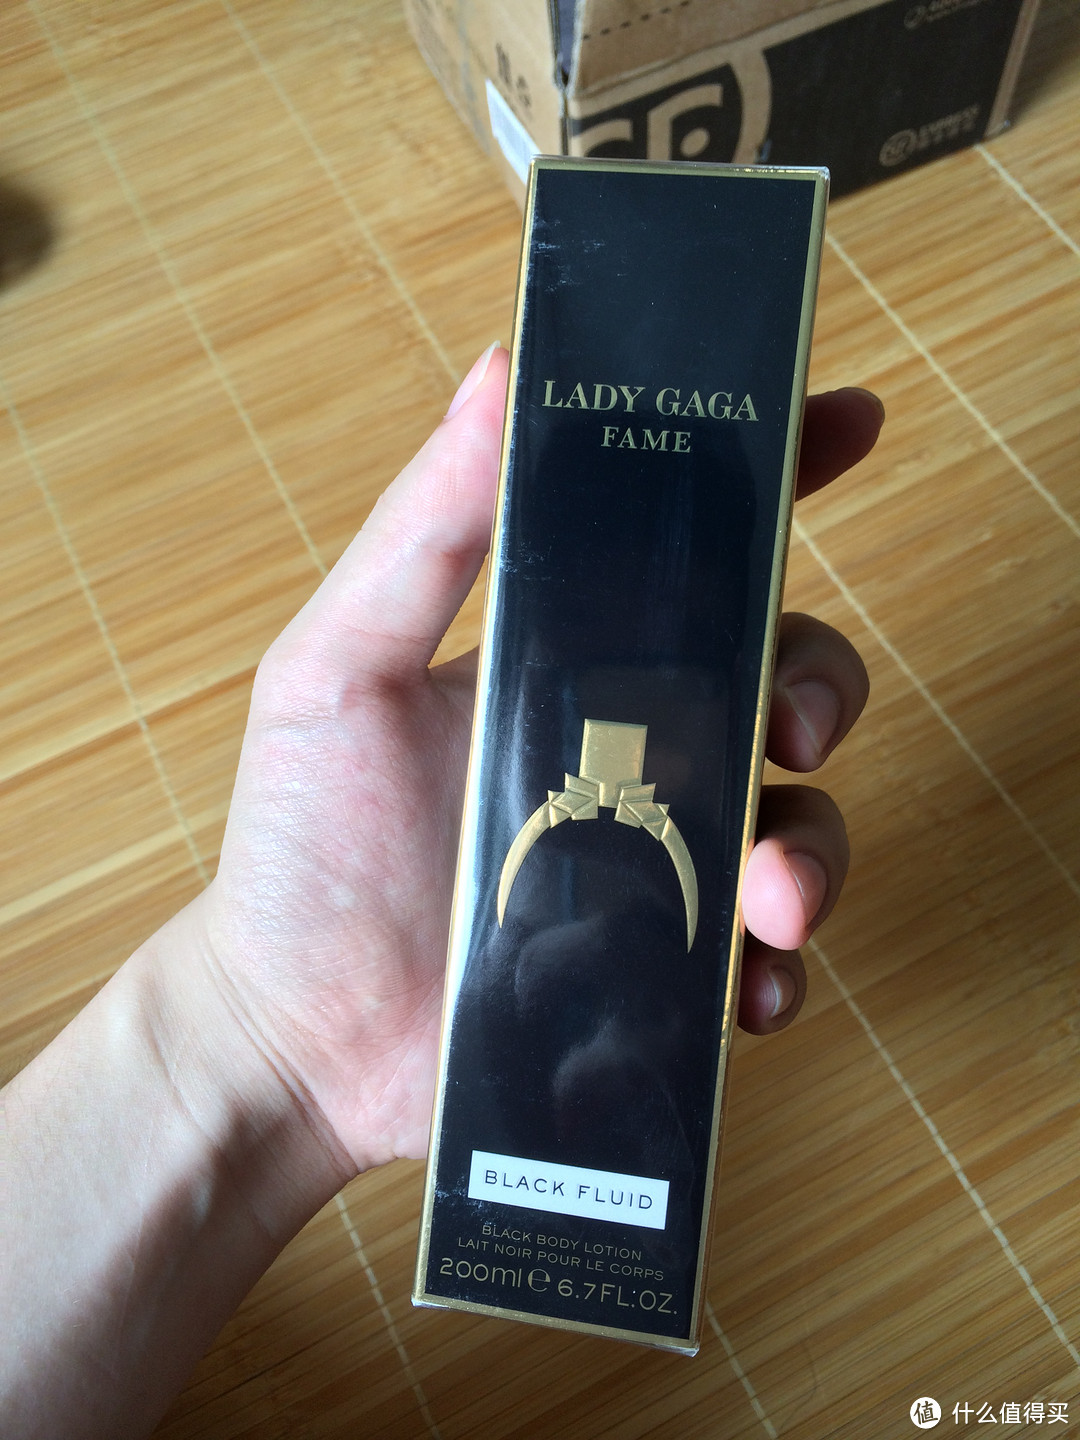 【真人秀】Bad Romance！Lady GaGa Fame 黑色润体乳液，香港草莓网购物初体验